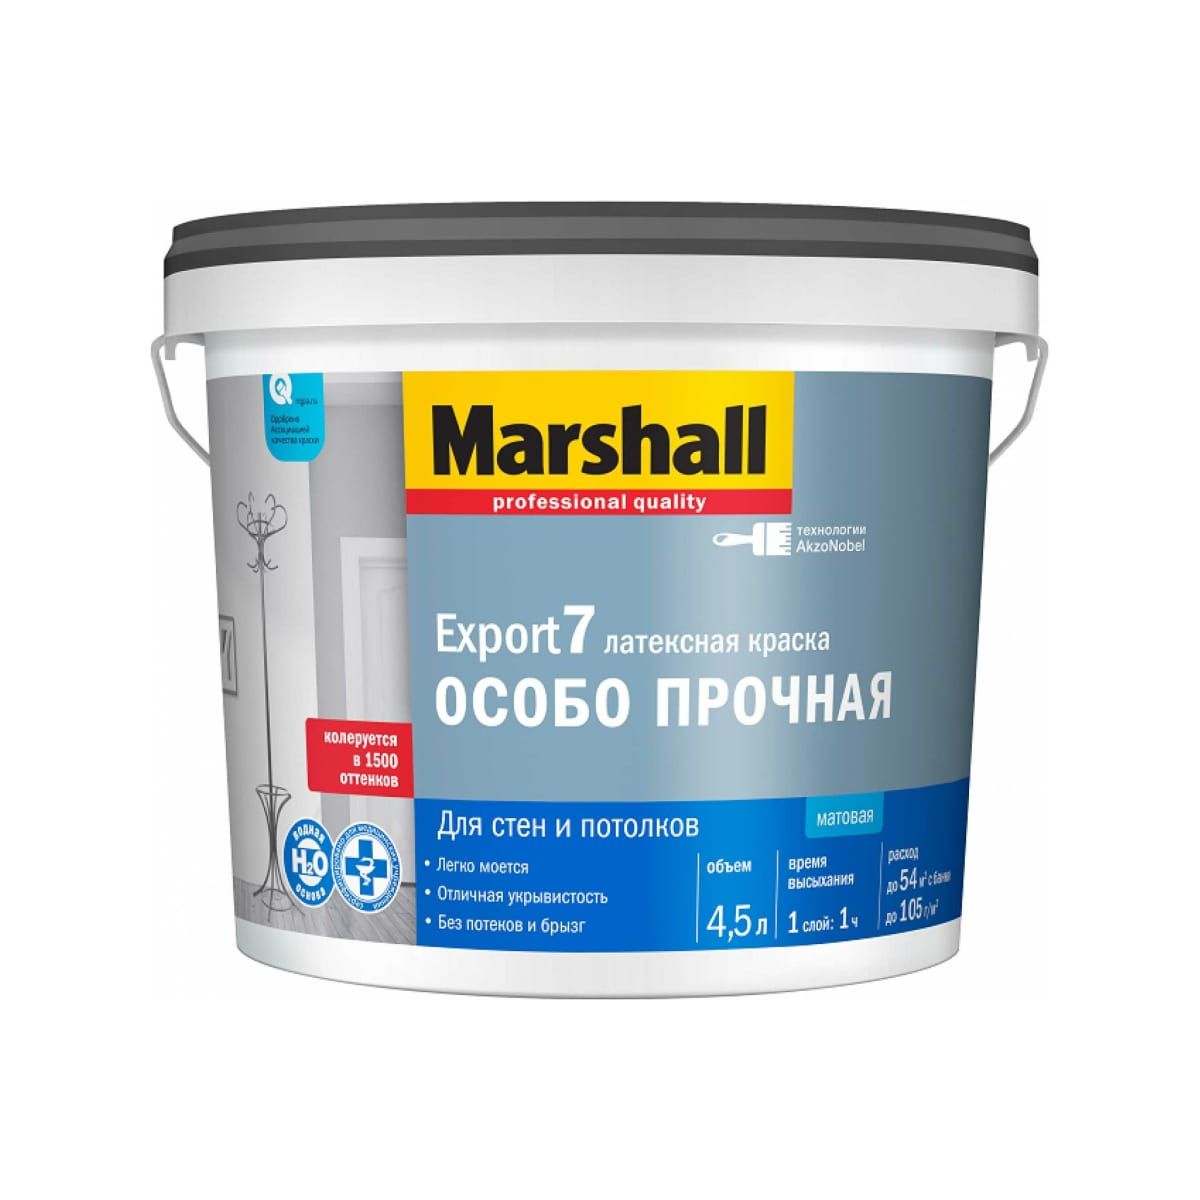 Краска Marshall Export 7 латексная, матовая, BC, 4,5 л